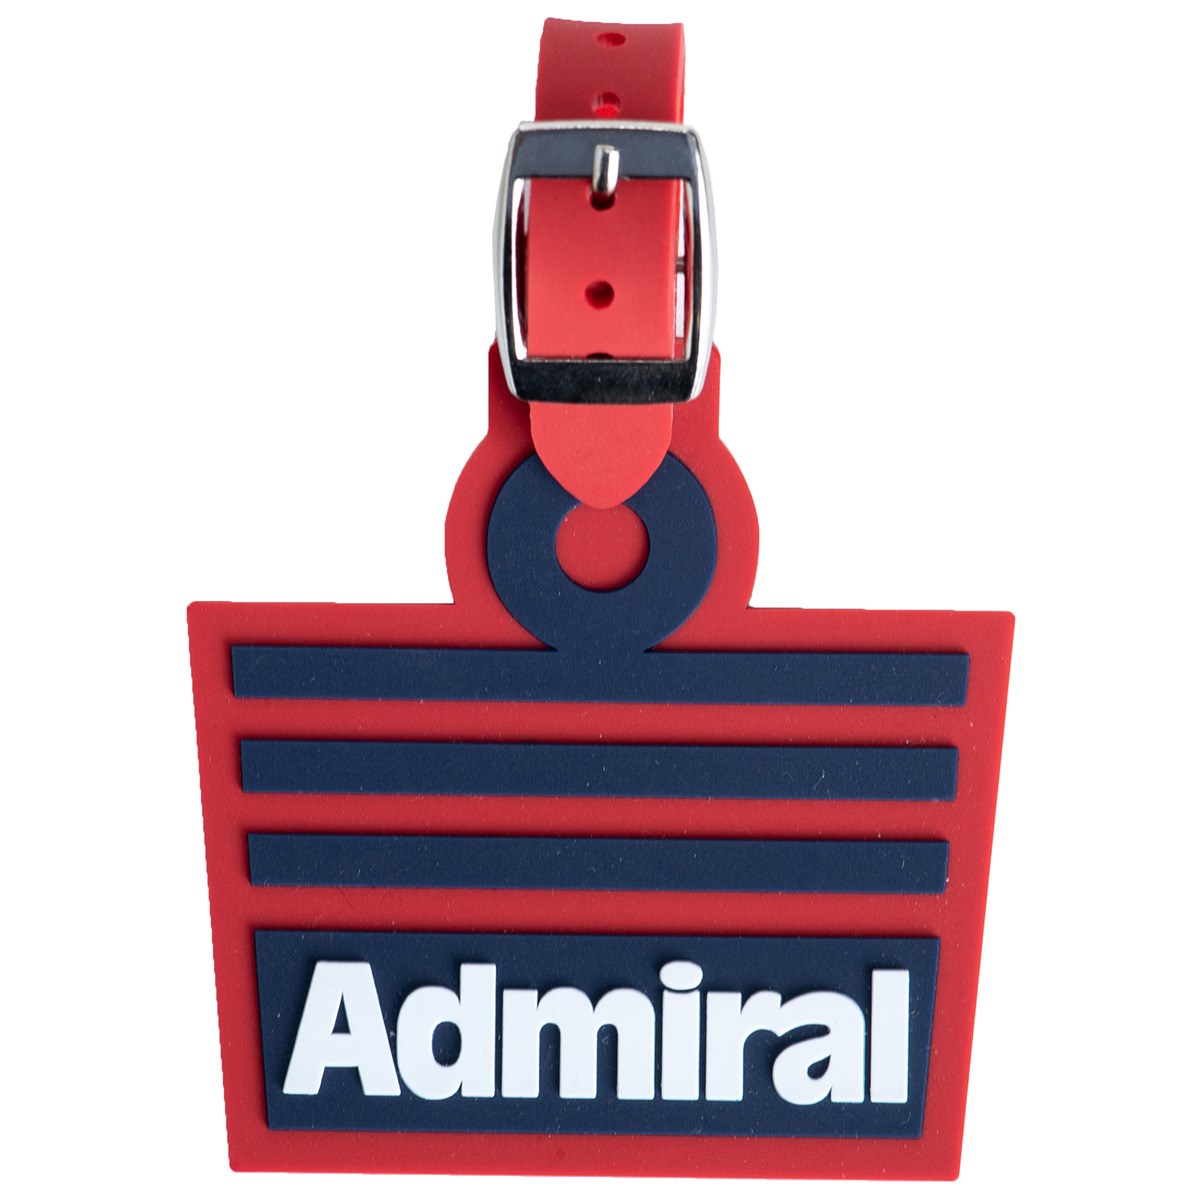 Dショッピング アドミラル Admiral Admiral ネームプレート レッド 40 カテゴリ ラウンドバッグ ポーチ 小物入れの販売できる商品 Gdoゴルフショップ ドコモの通販サイト